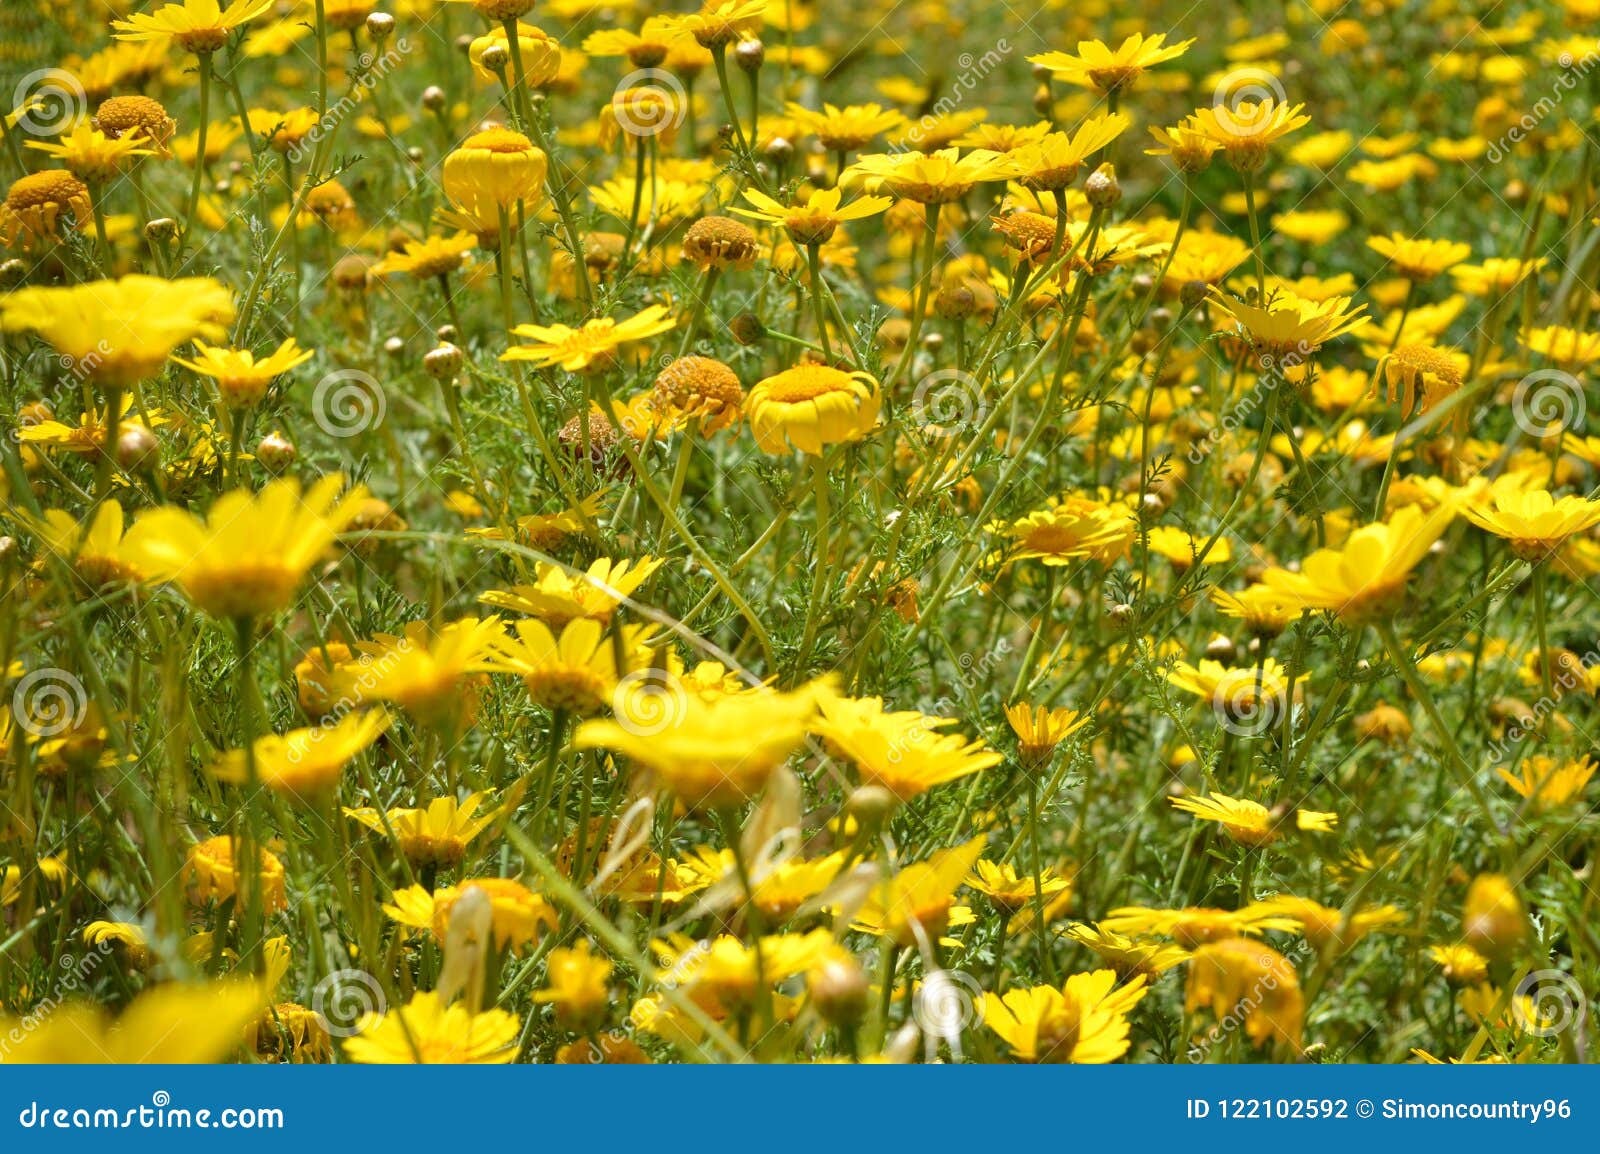 Pré De Marguerite Jaune Sauvage, Nature, Sicile Photo stock - Image du  italie, fleur: 122102592